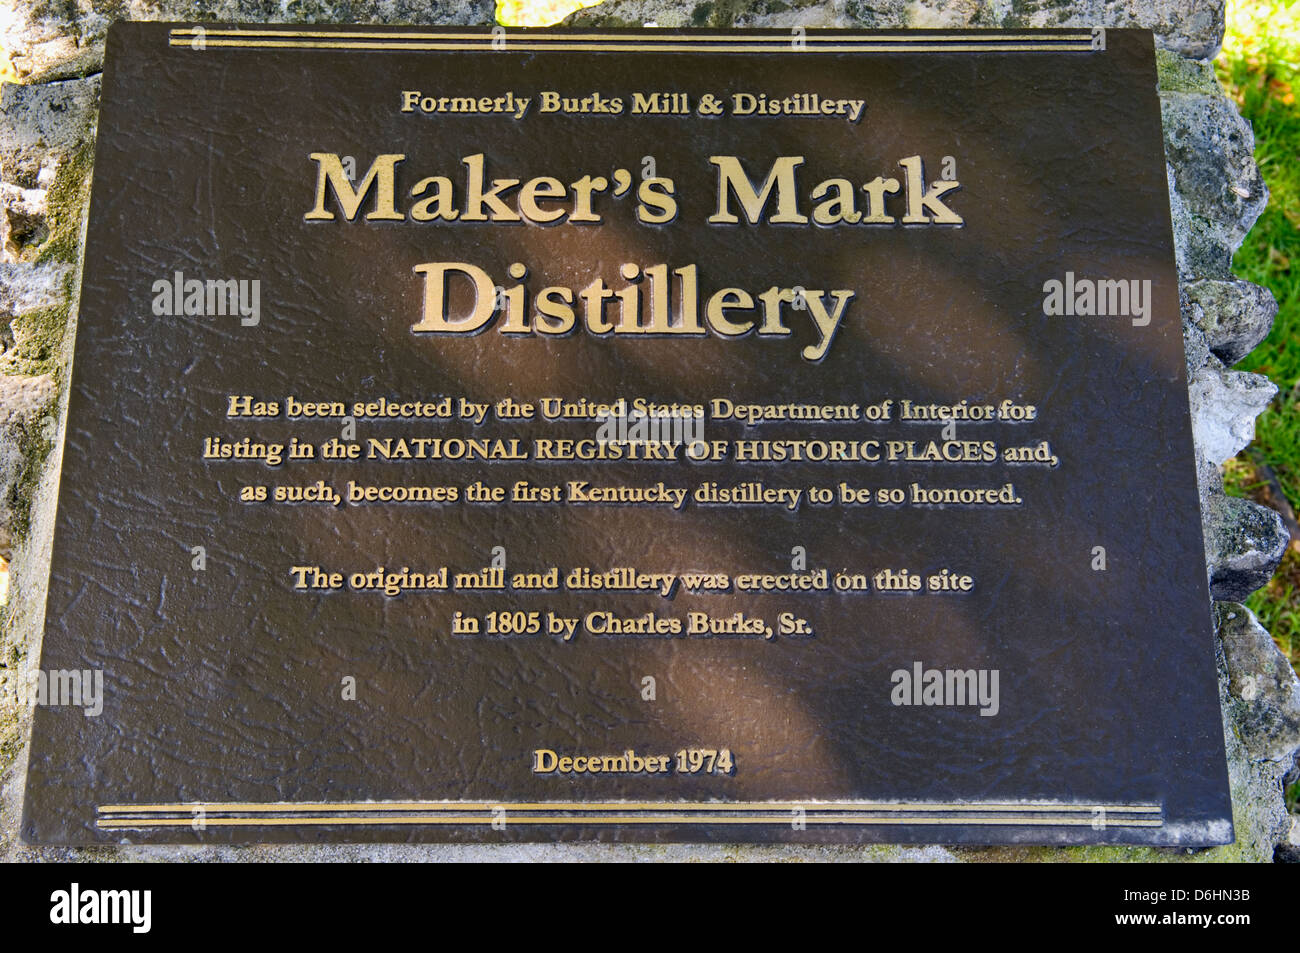 Registre National des Endroits Historiques Marqueur pour distillerie Maker's Mark Loretto, Kentucky Banque D'Images